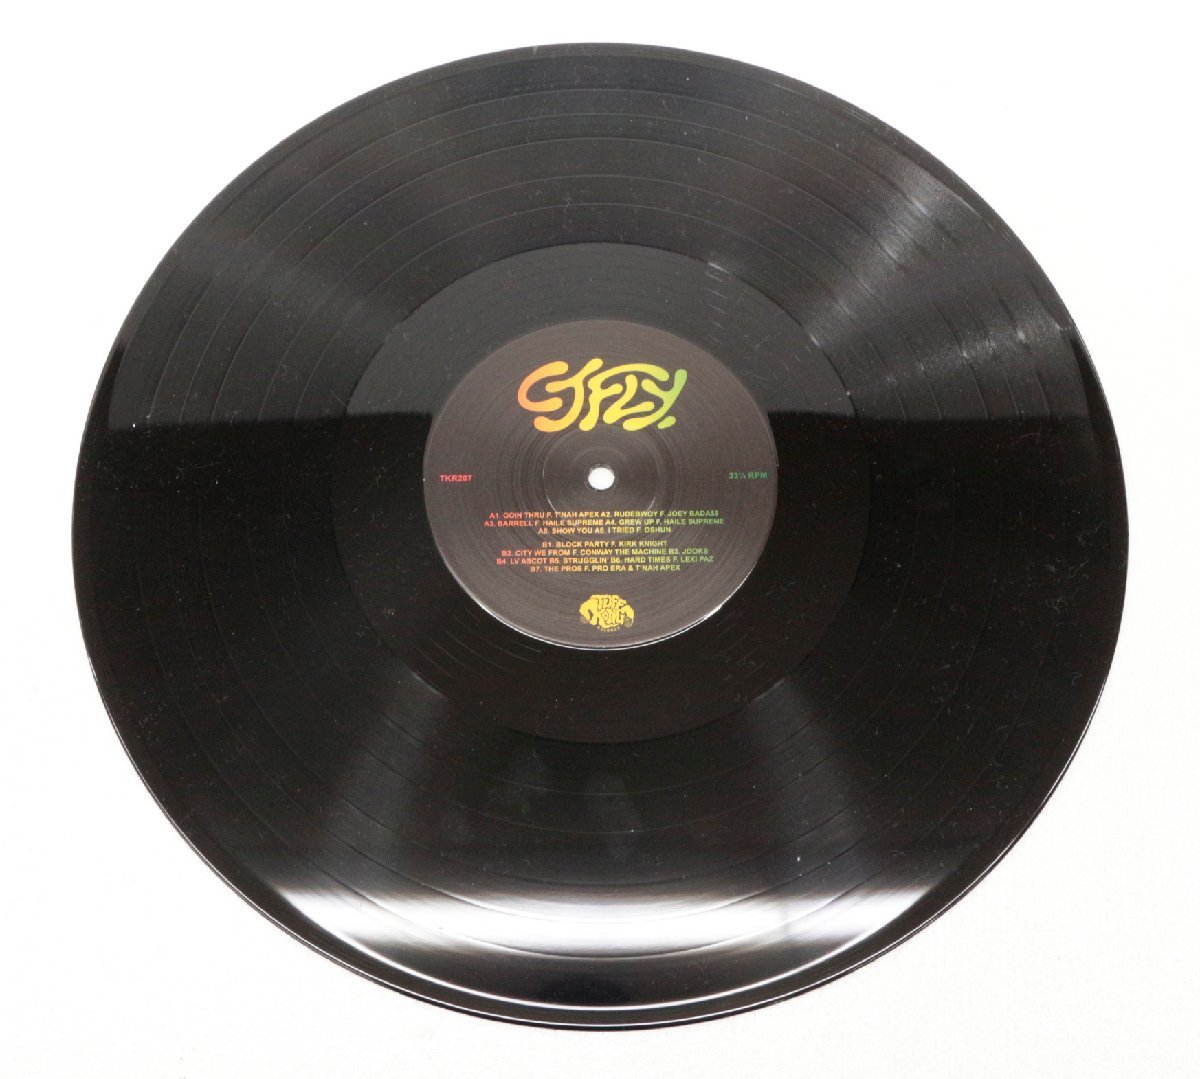 【中古・ジャンク品】CJ Fly & Statik Selektah Rudebwoy コラボ アルバム LP レコード【再生未確認】：_画像2